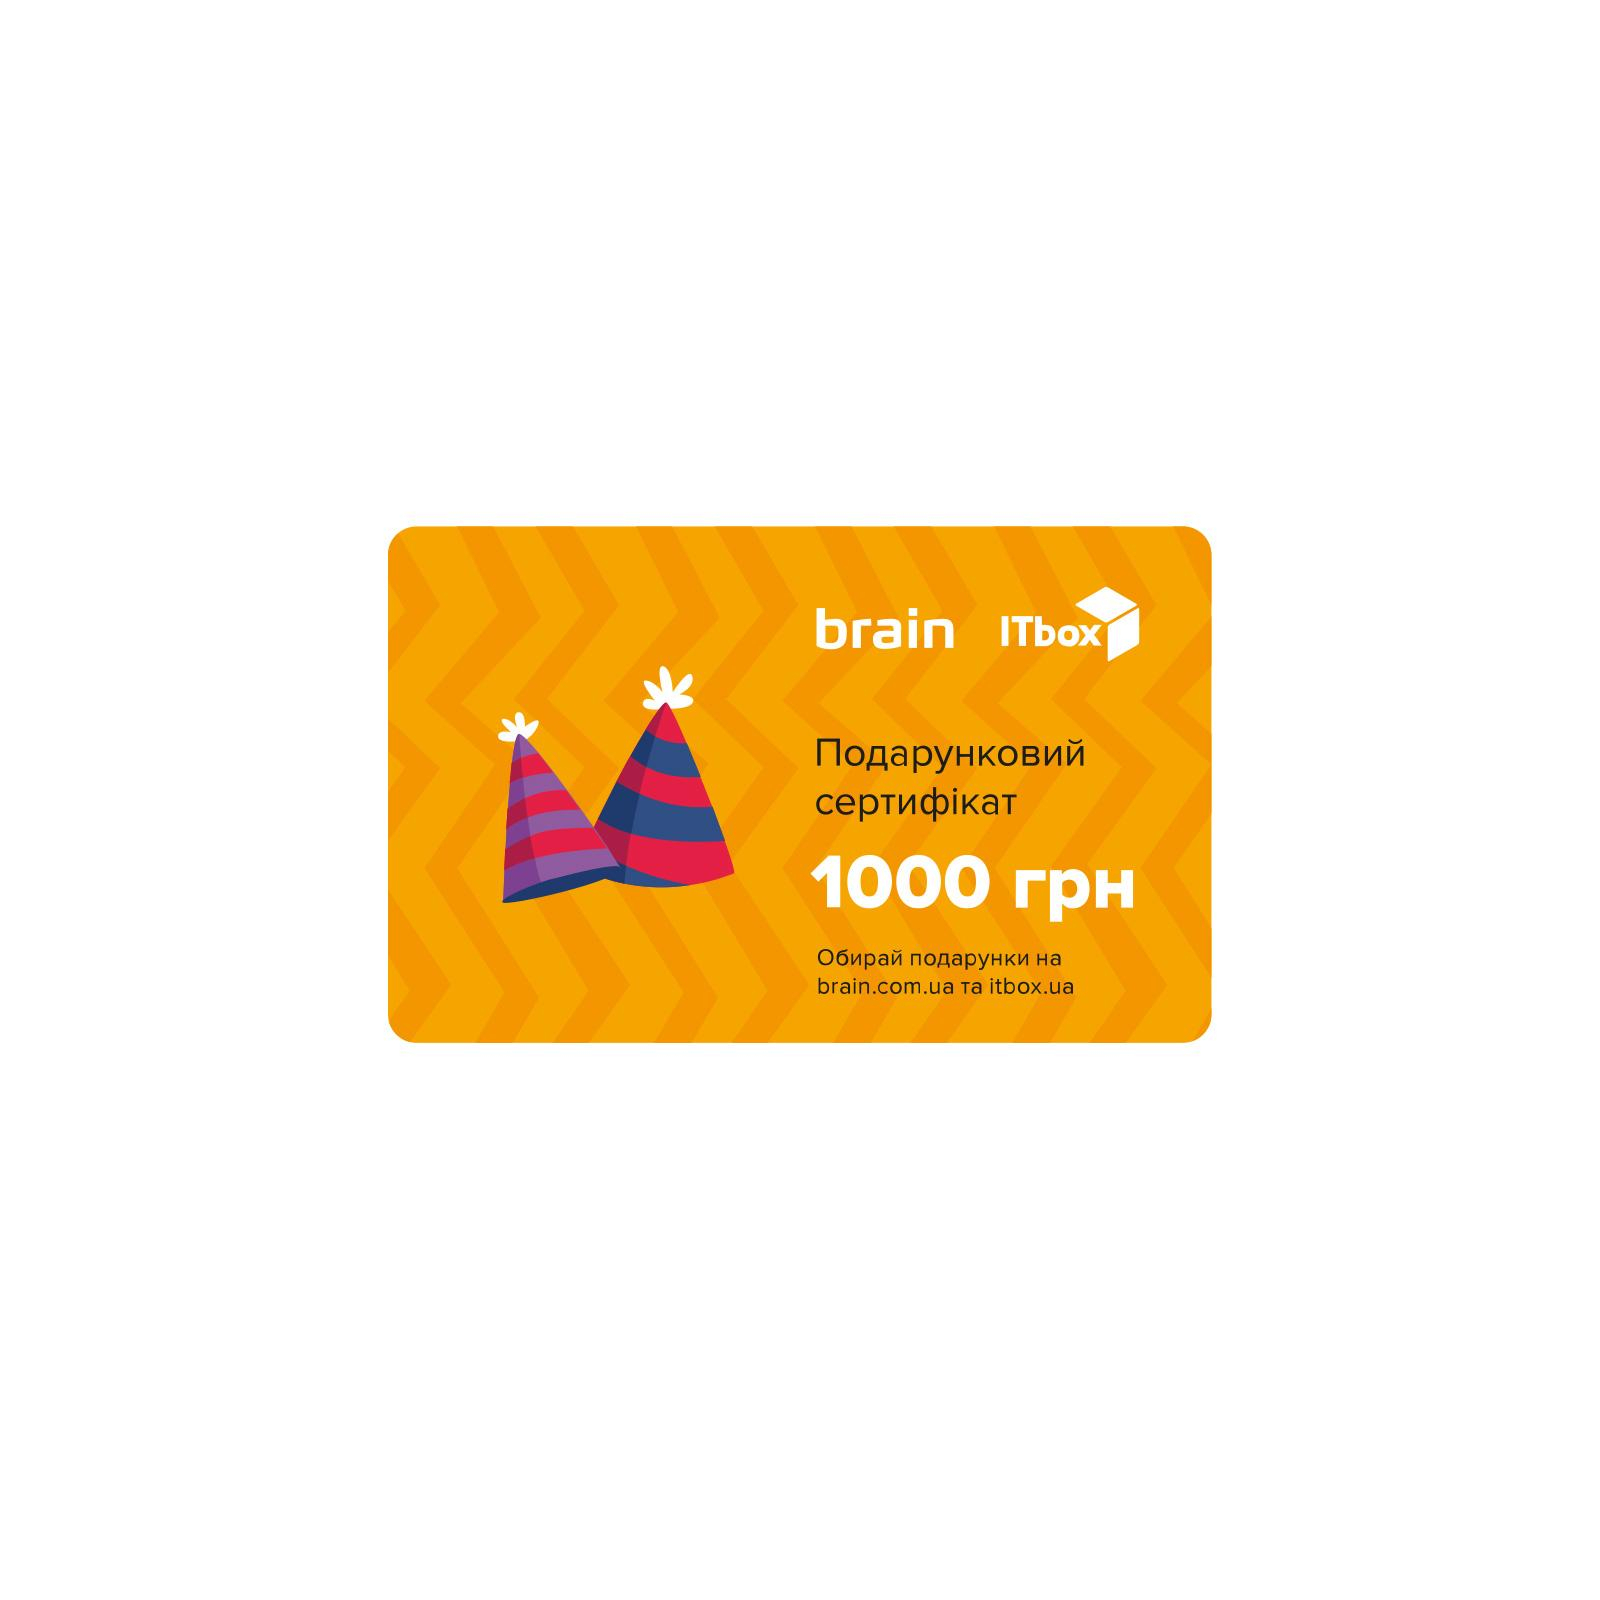 Подарочный сертификат на 1000 грн Brain/ITbox